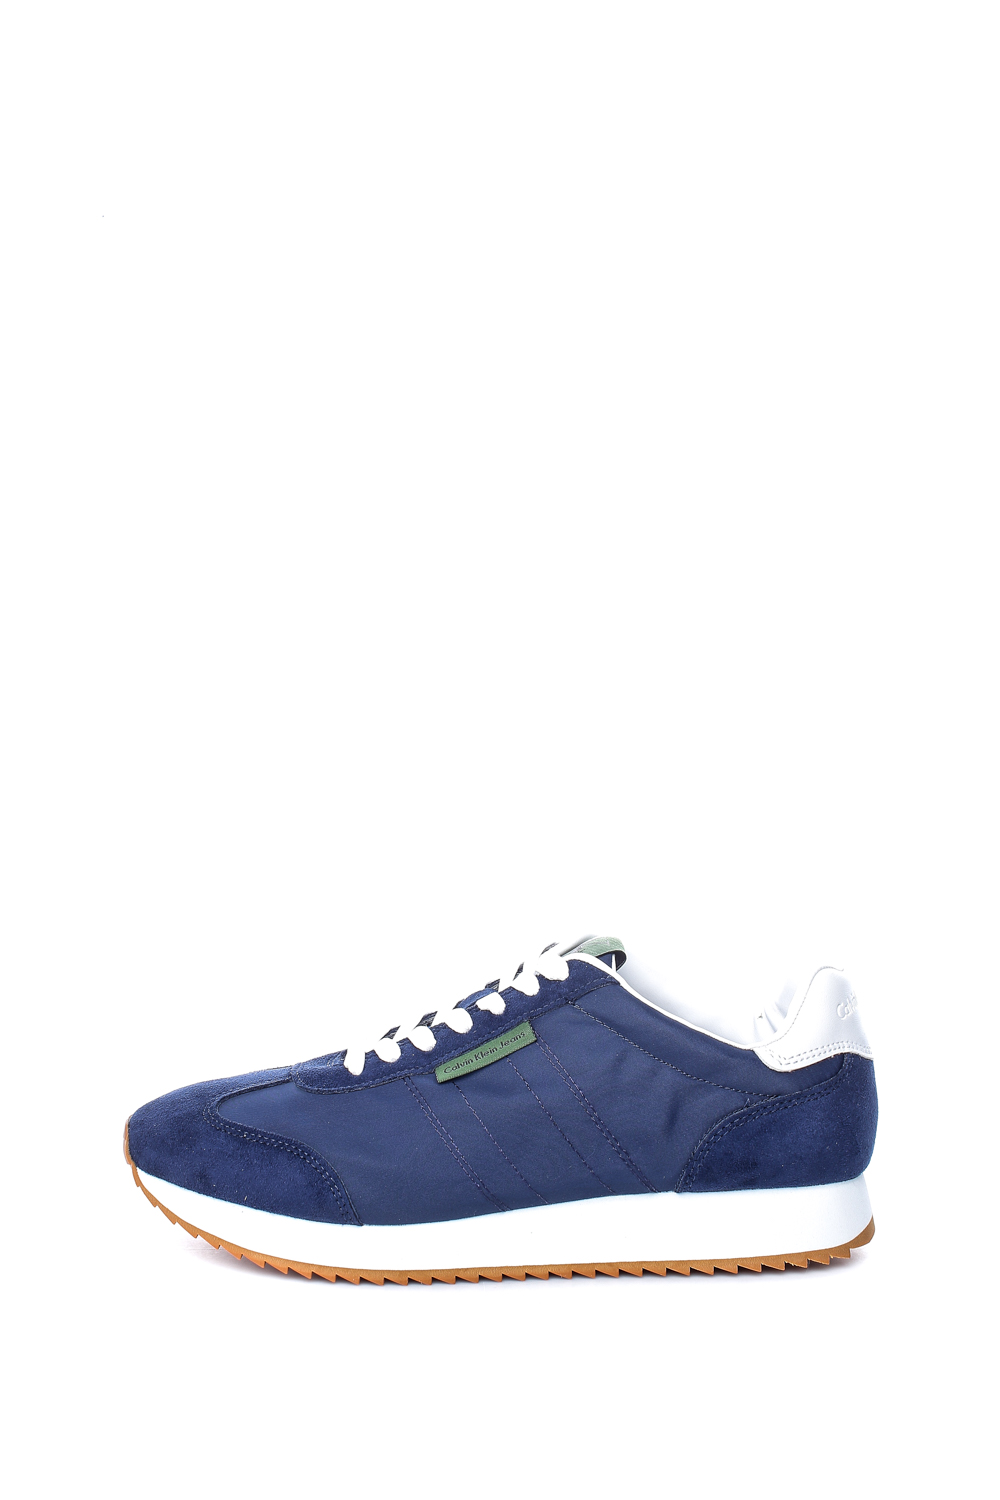 Ανδρικά/Παπούτσια/Sneakers CALVIN KLEIN JEANS - Ανδρικά sneakers CALVIN KLEIN JEANS GRAPH μπλε